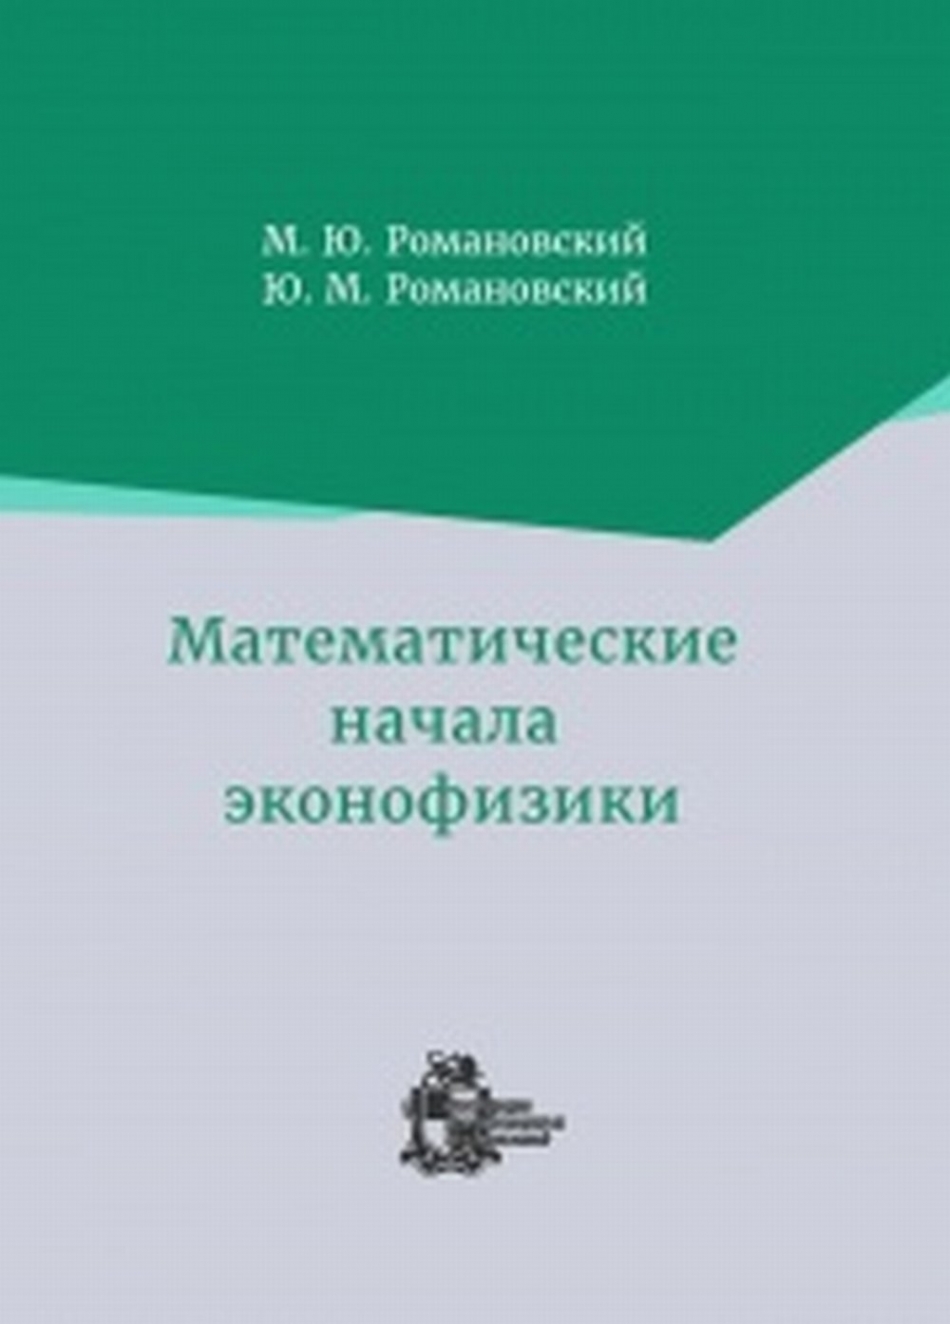 Романовский М.Ю., Романовский Ю.М. Математические начала эконофизики.  